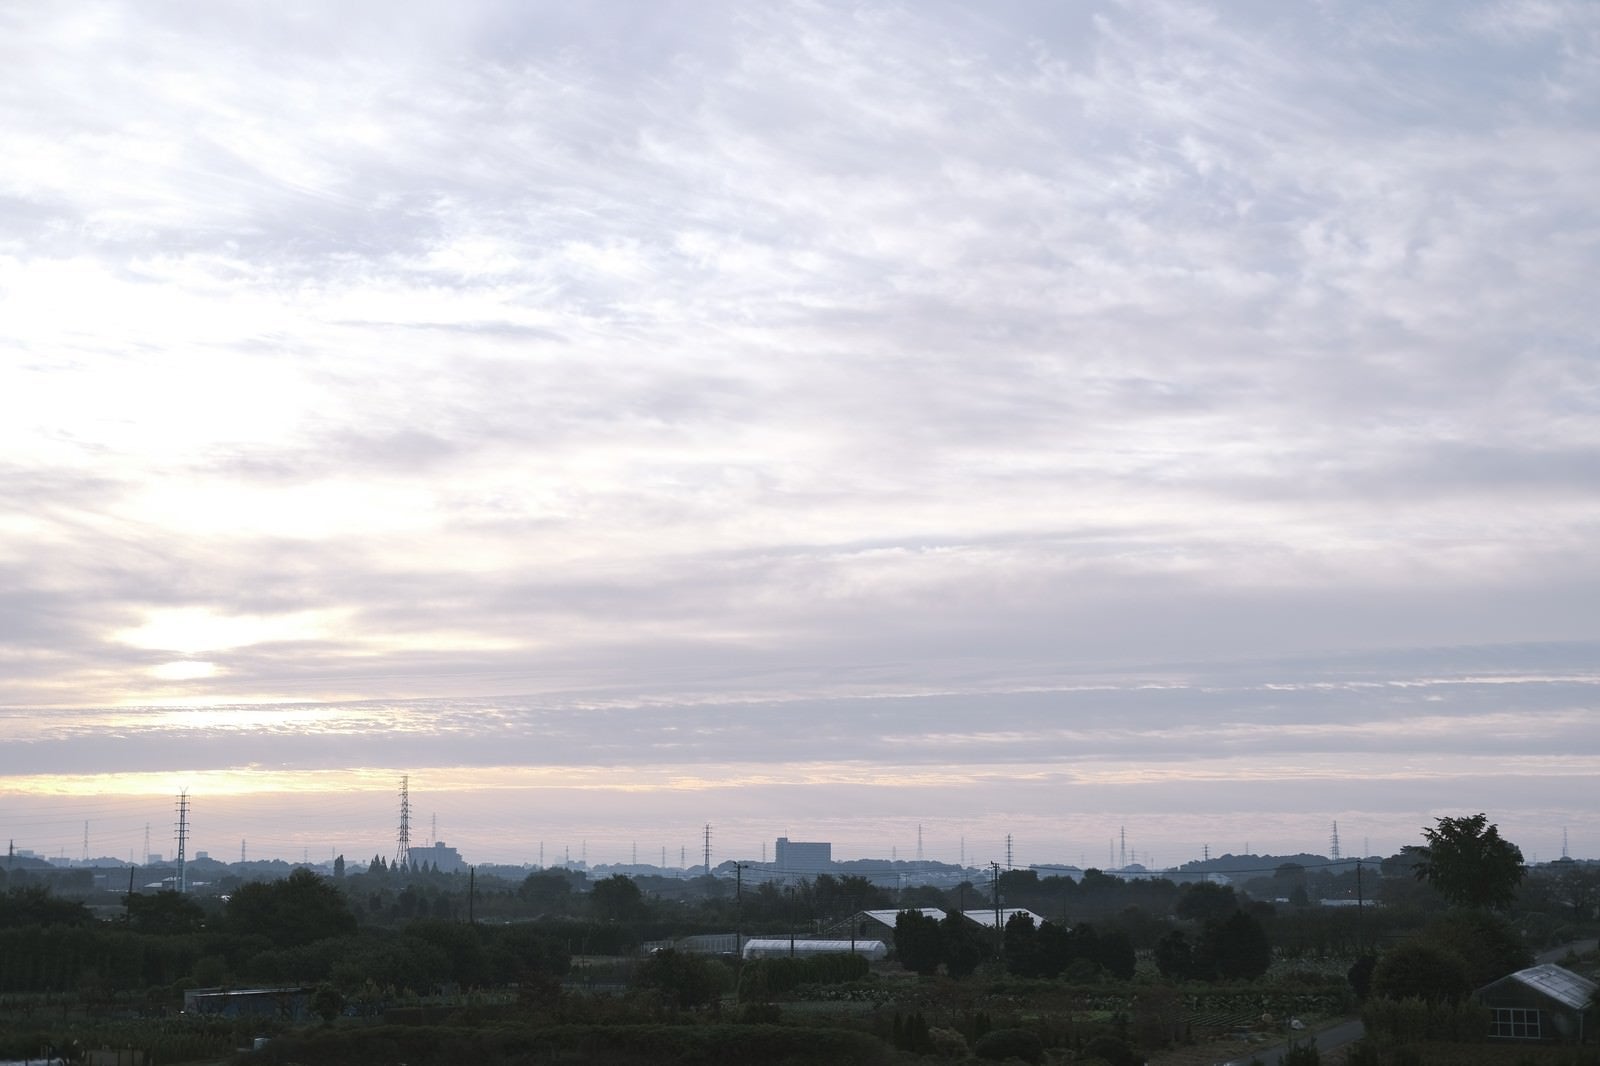 「シルキーな雲が広がる朝の空」の写真